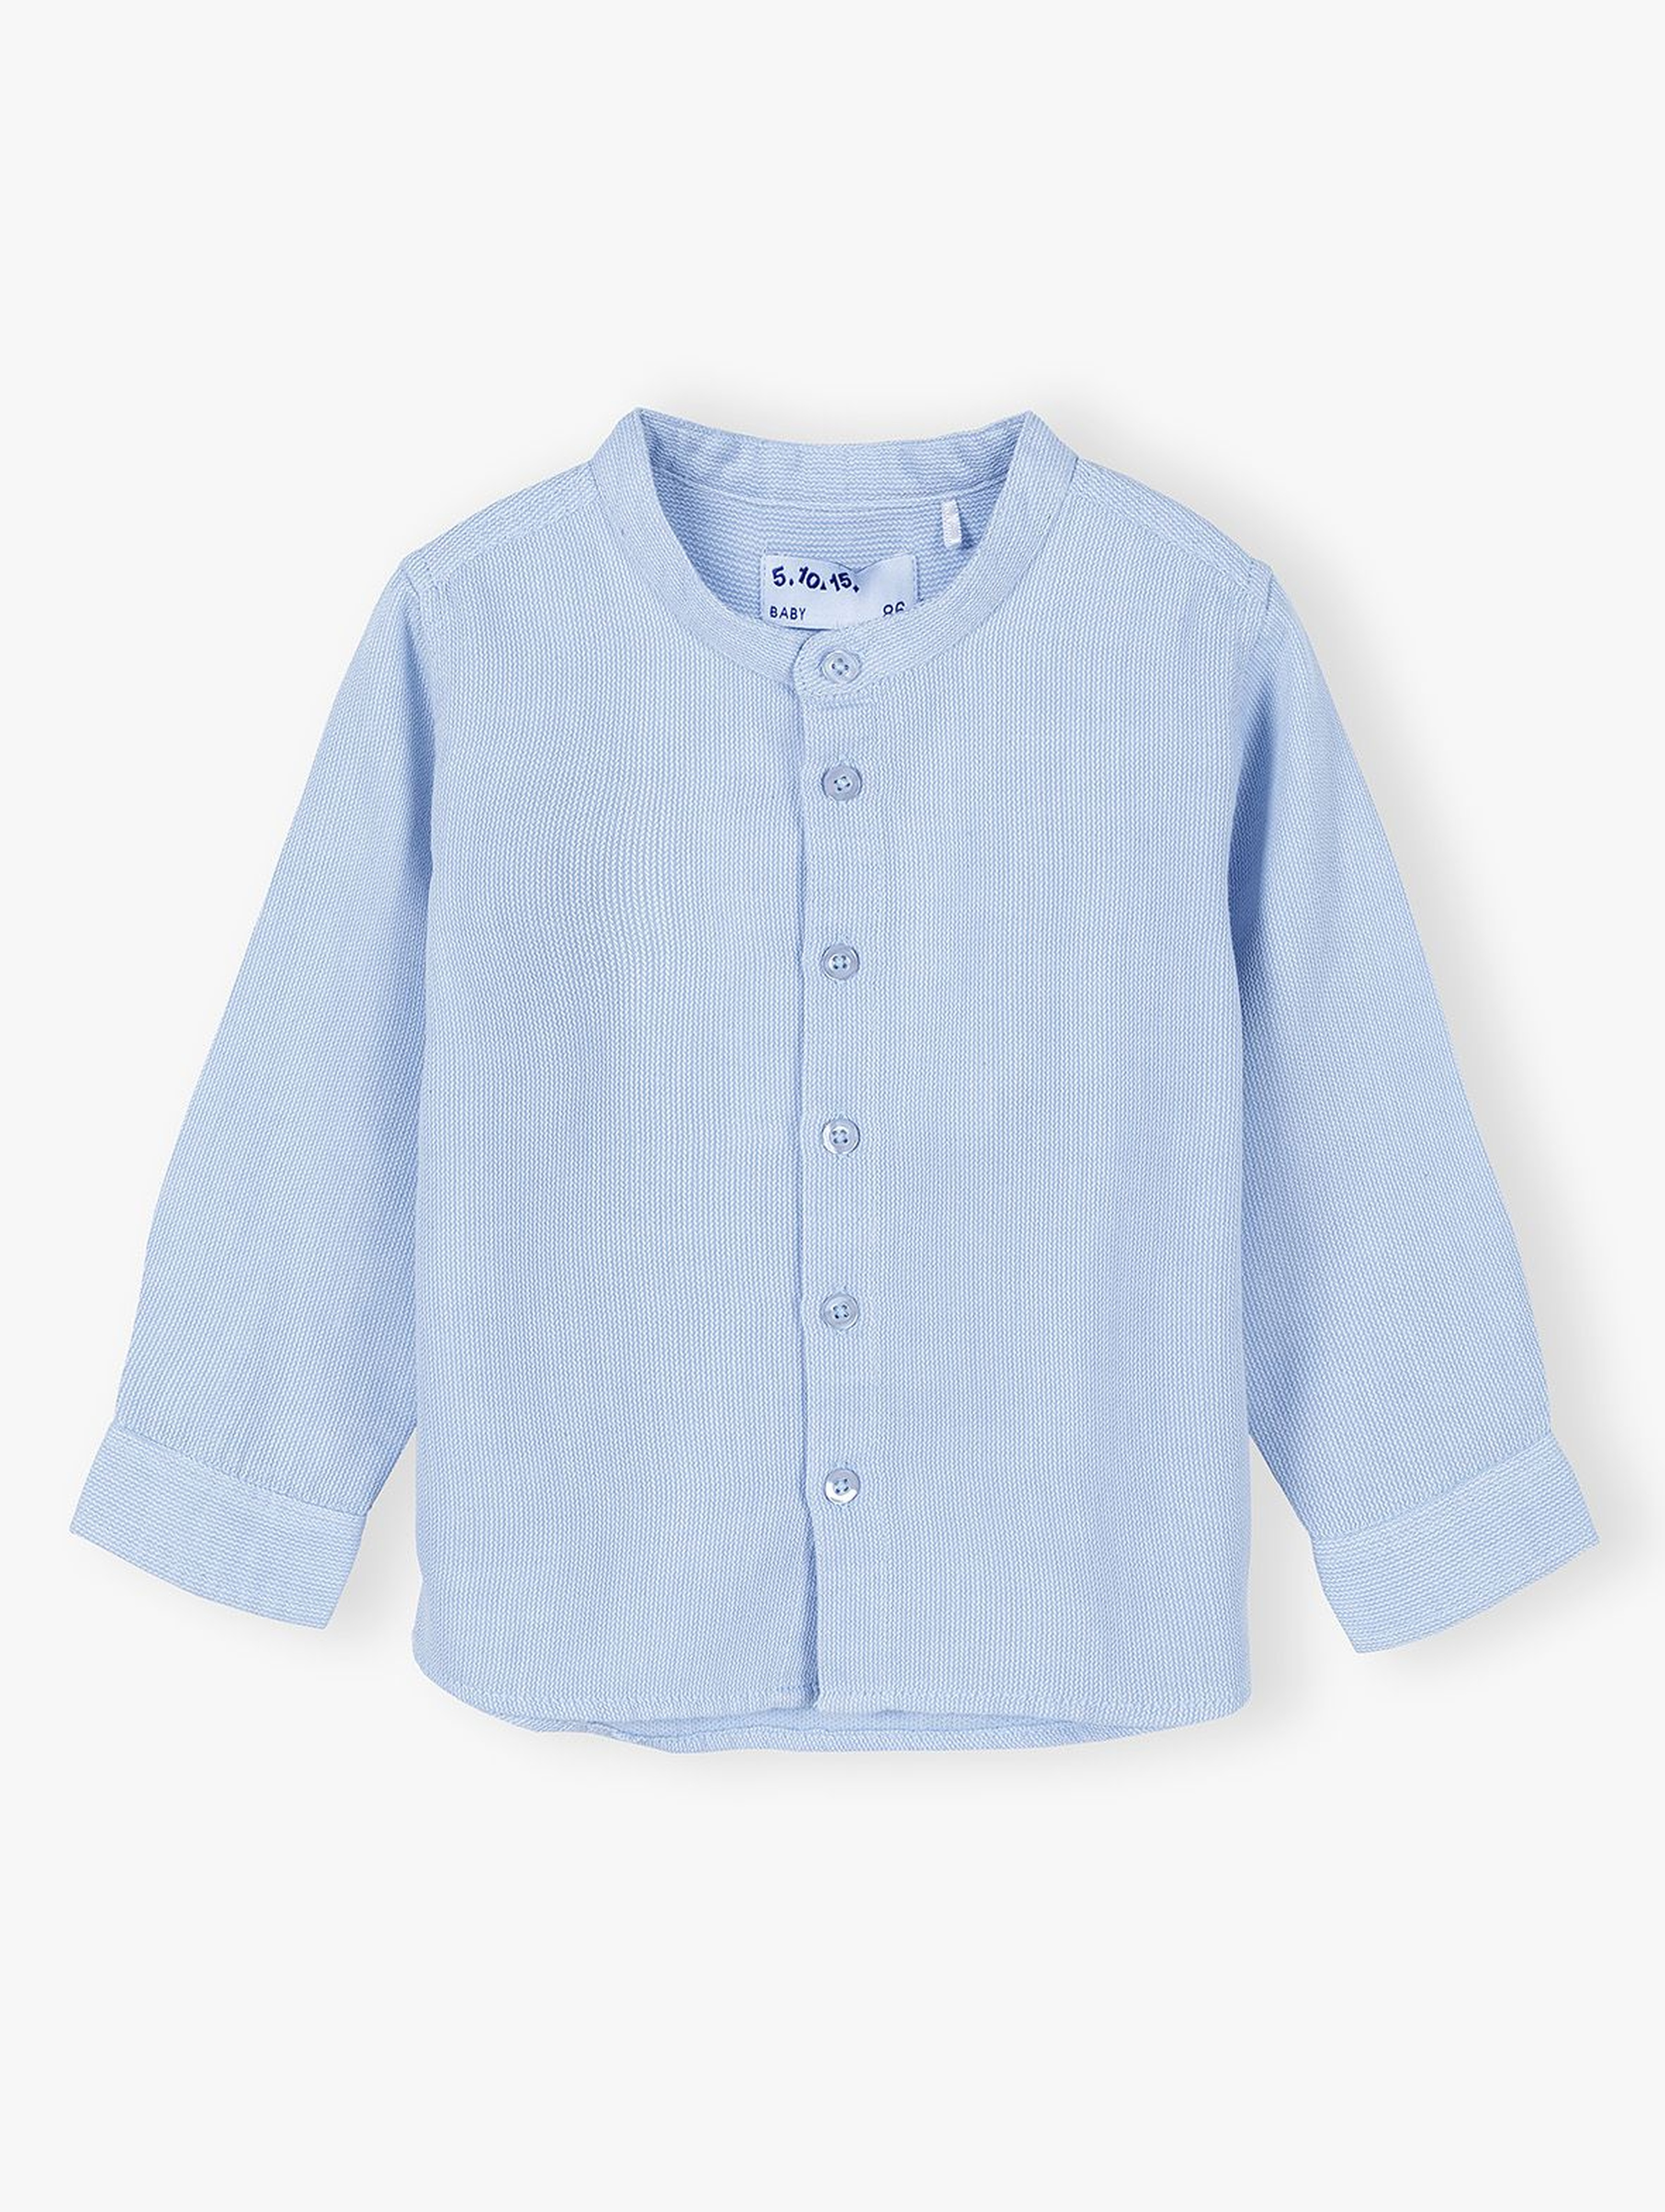 Tkaninowa koszula niemowlęca z ozdobnymi guziczkami - niebieska